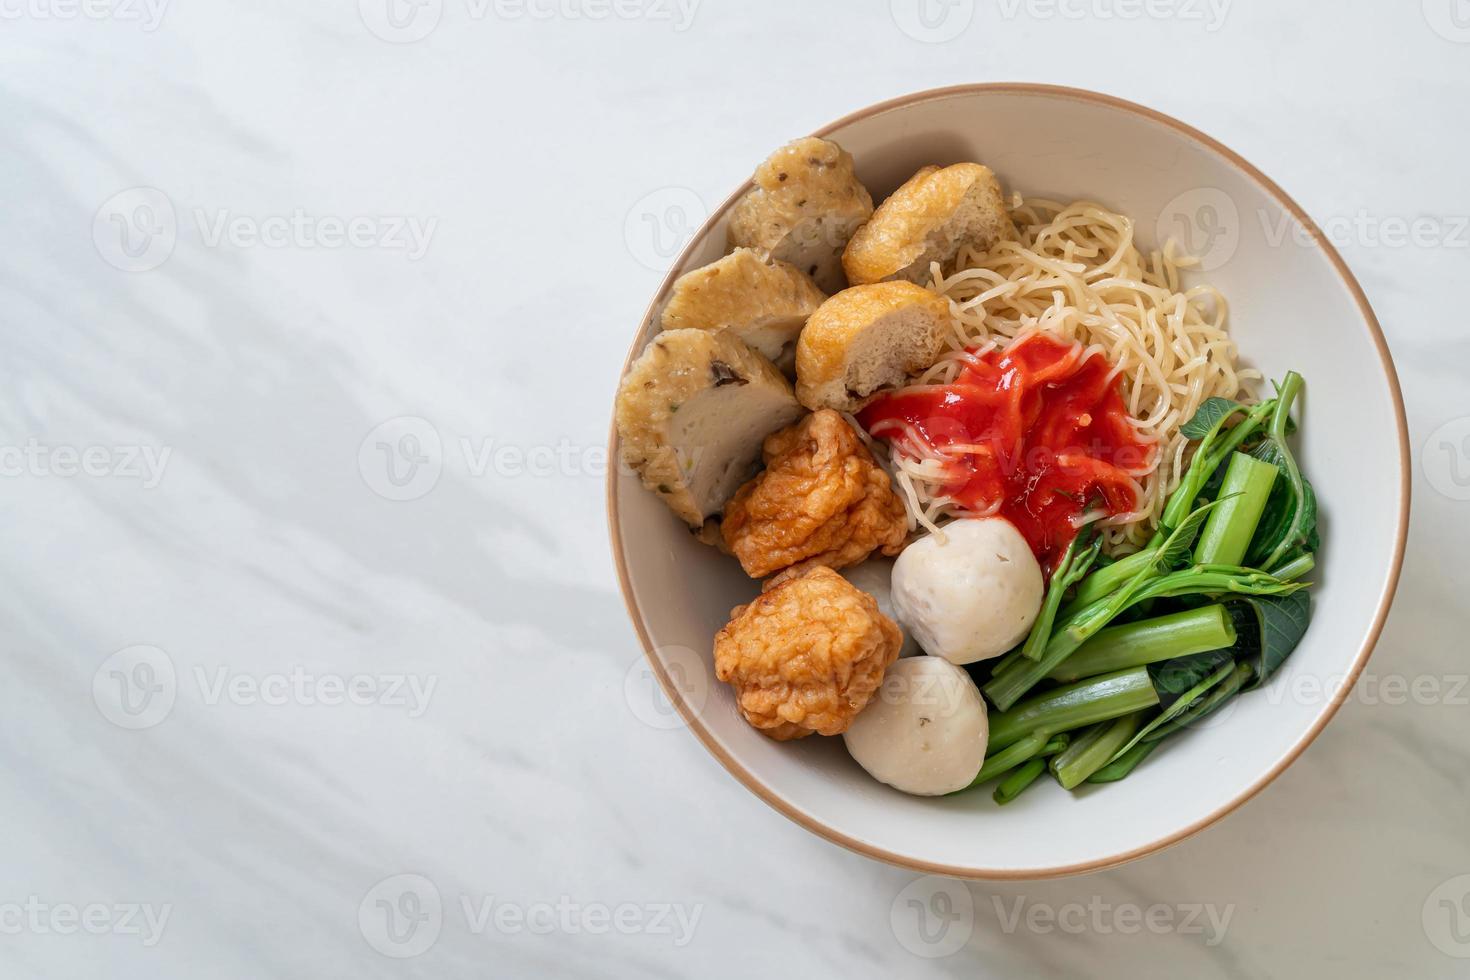 nouilles aux œufs avec boulettes de poisson et boulettes de crevettes à la sauce rose, yen ta four ou yen ta fo - style cuisine asiatique photo